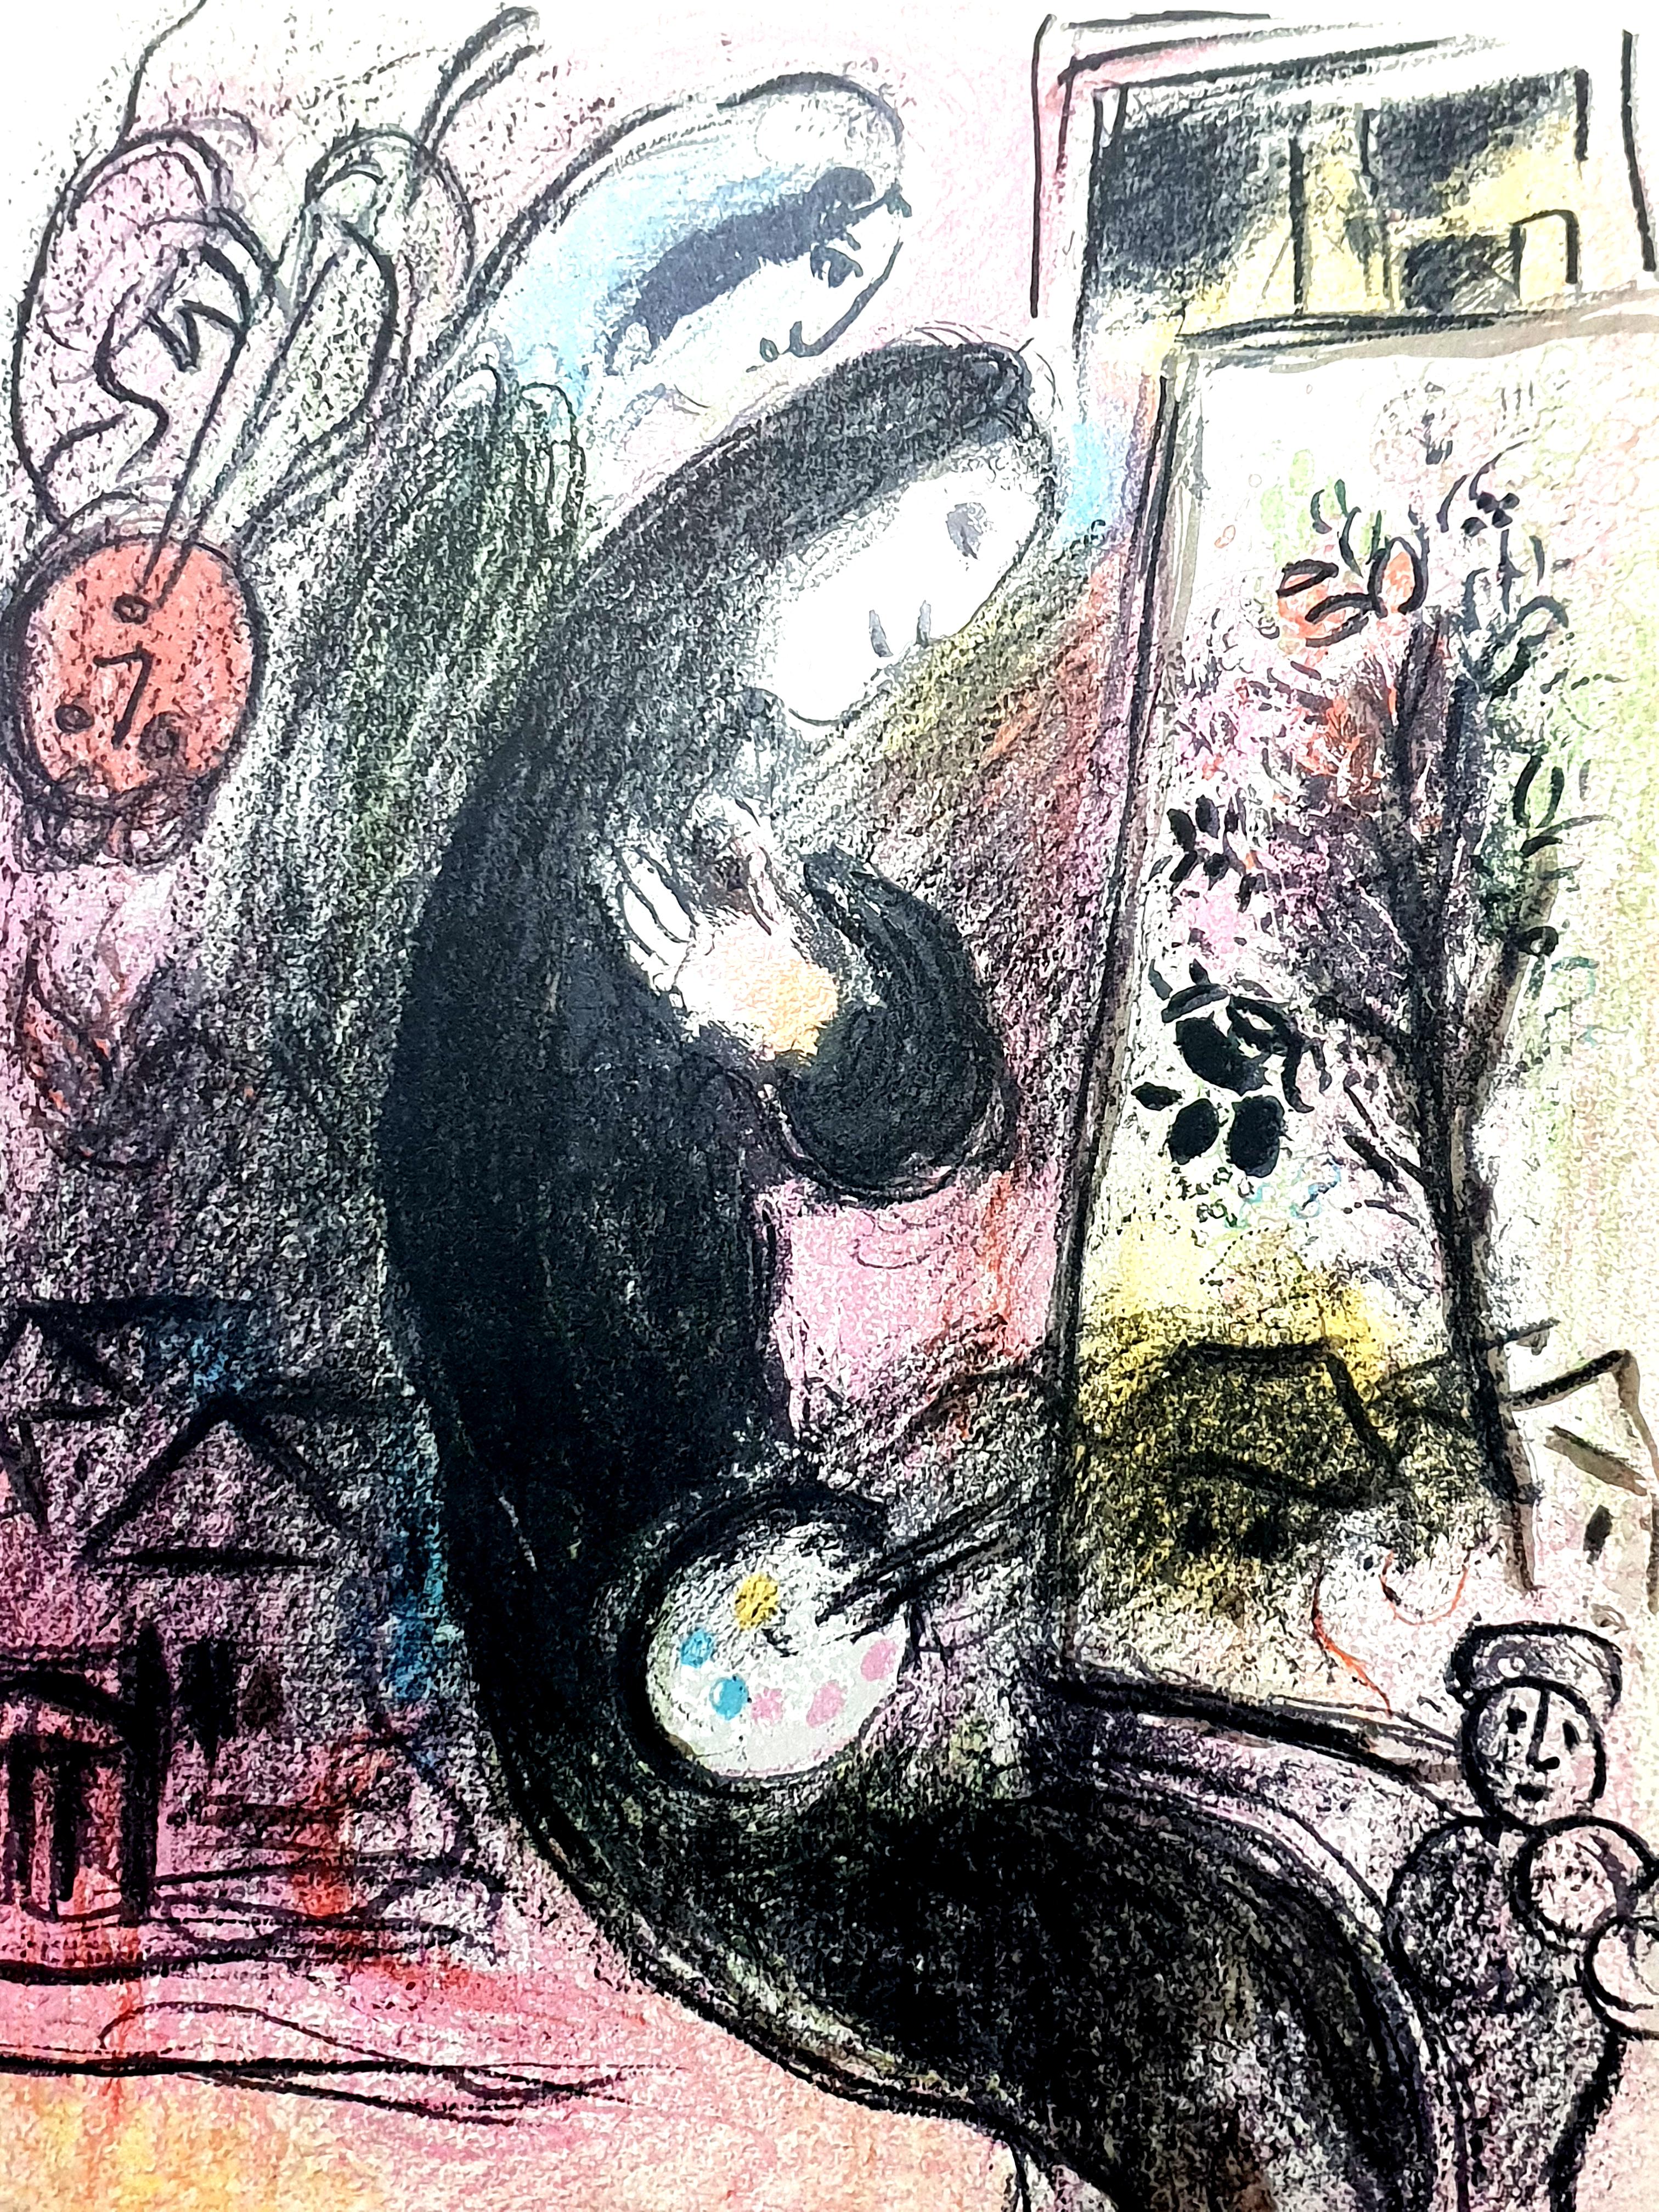 Marc Chagall
Lithographie originale de Chagall Lithographe 1957-1962. VOLUME II.
1963
Dimensions : 32 x 24 cm
Extrait de l'édition non signée de 10000 exemplaires sans marges.
Référence : Mourlot 398
Condition : Excellent

Marc Chagall  (né en